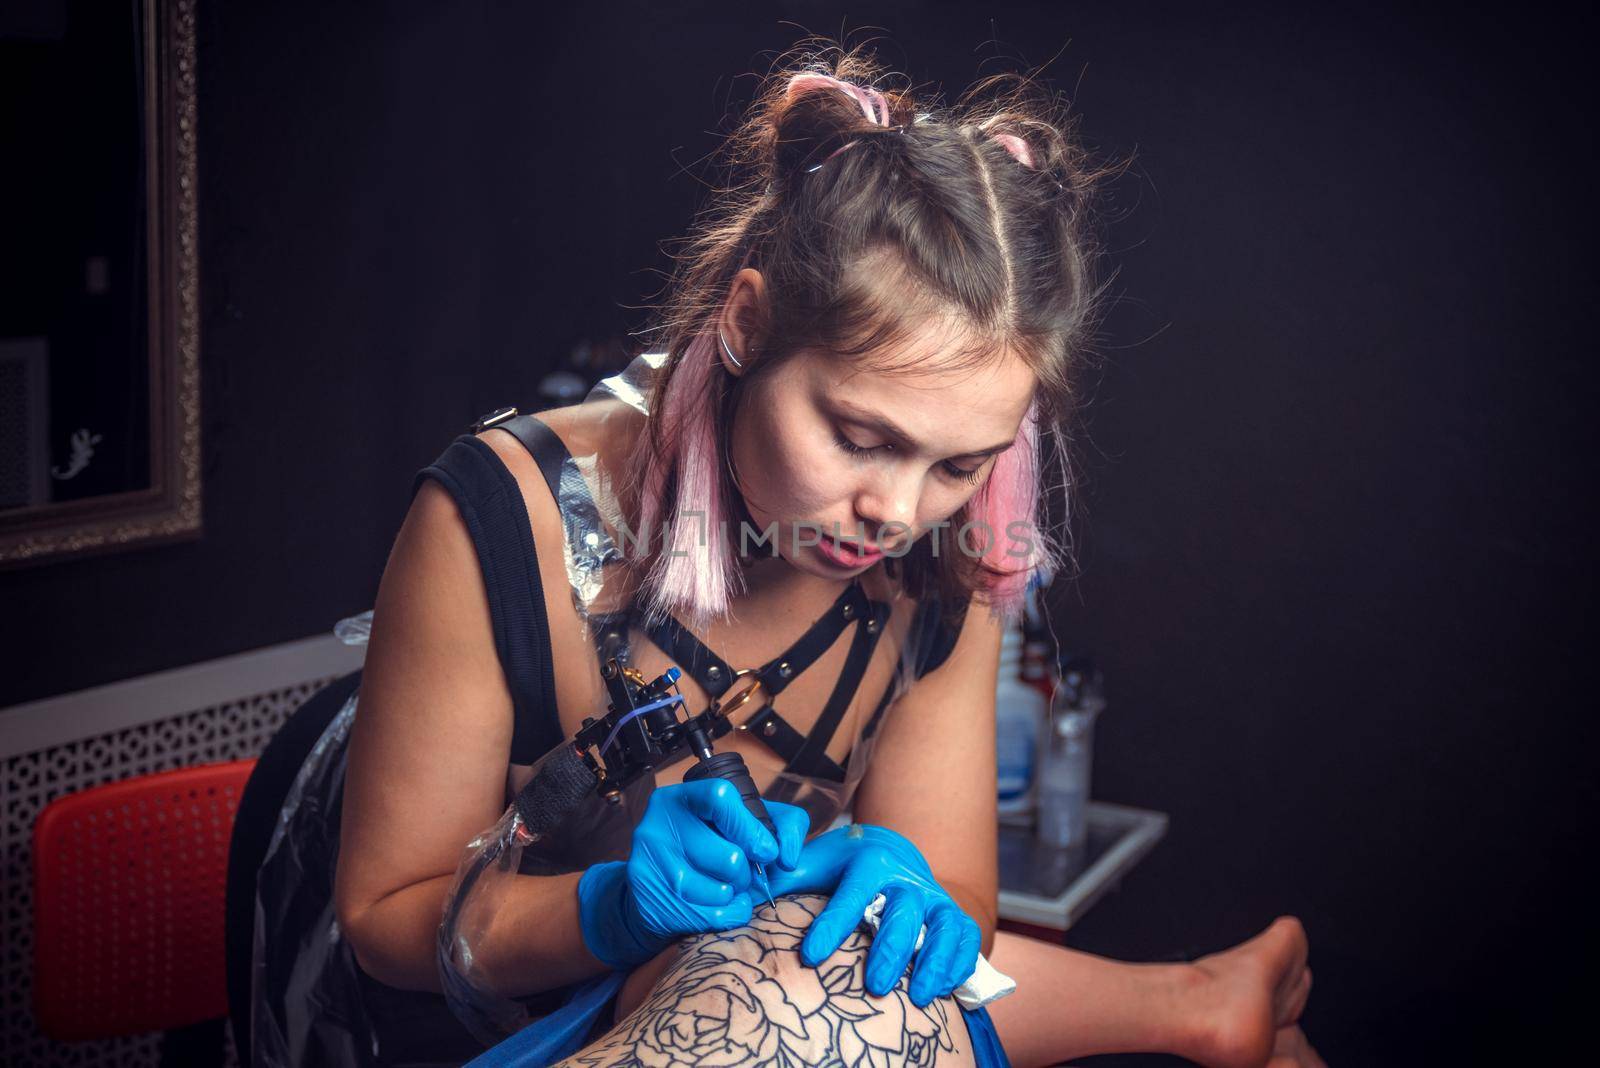 Professional tattoo artist makes tattoo in tattoo parlour./Professional tattooer doing tattoo in a workshop studio.